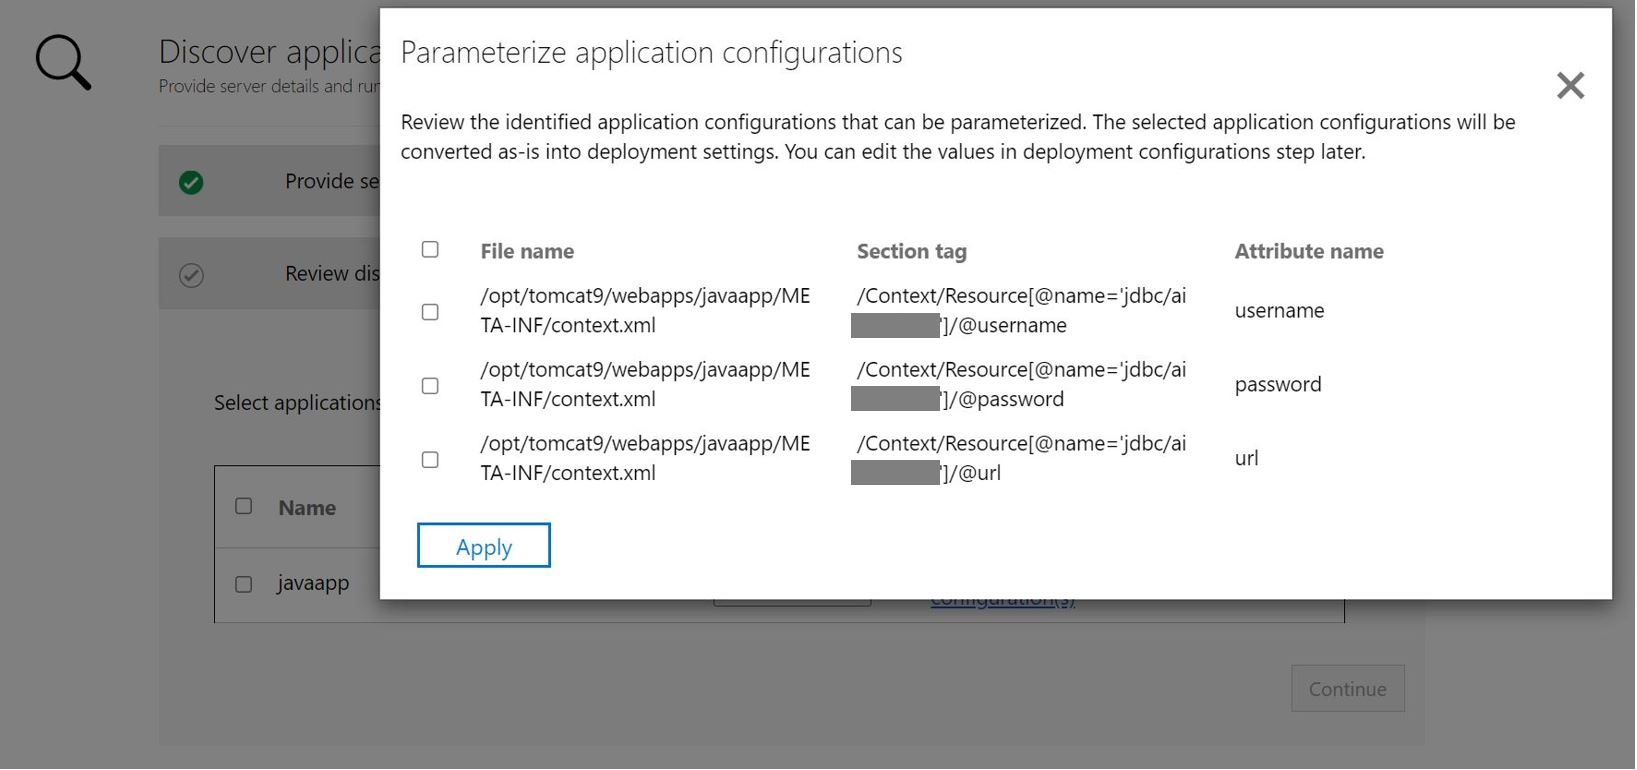 Képernyőkép az alkalmazáskonfiguráció paraméterezésének ASP.NET alkalmazásról.